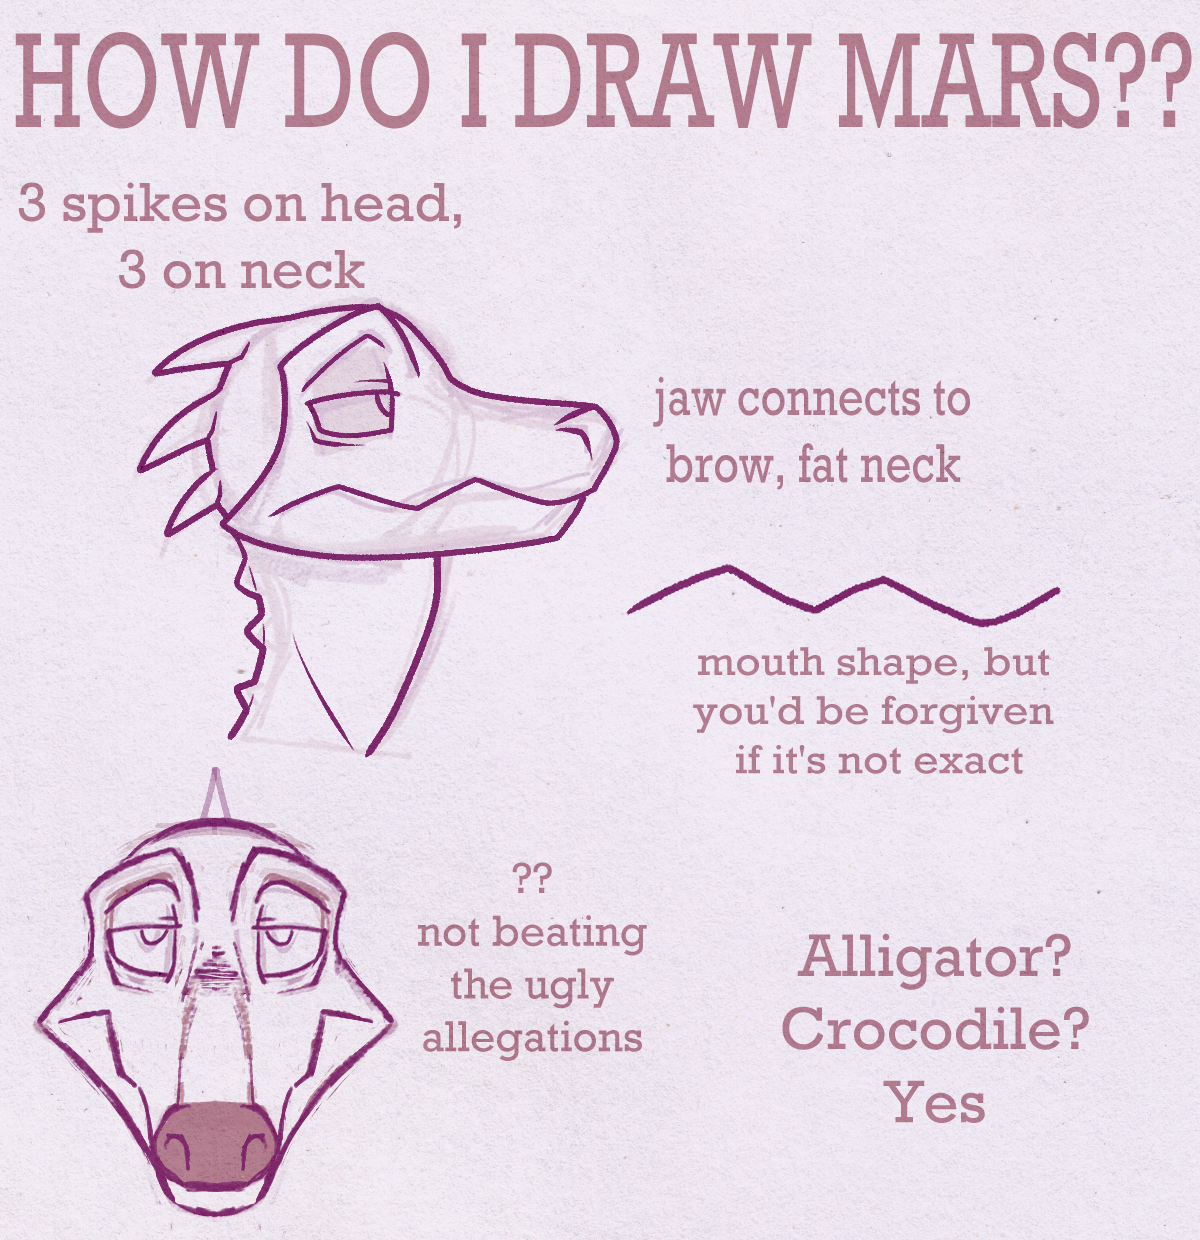 HOW DO I DRAW MARS?